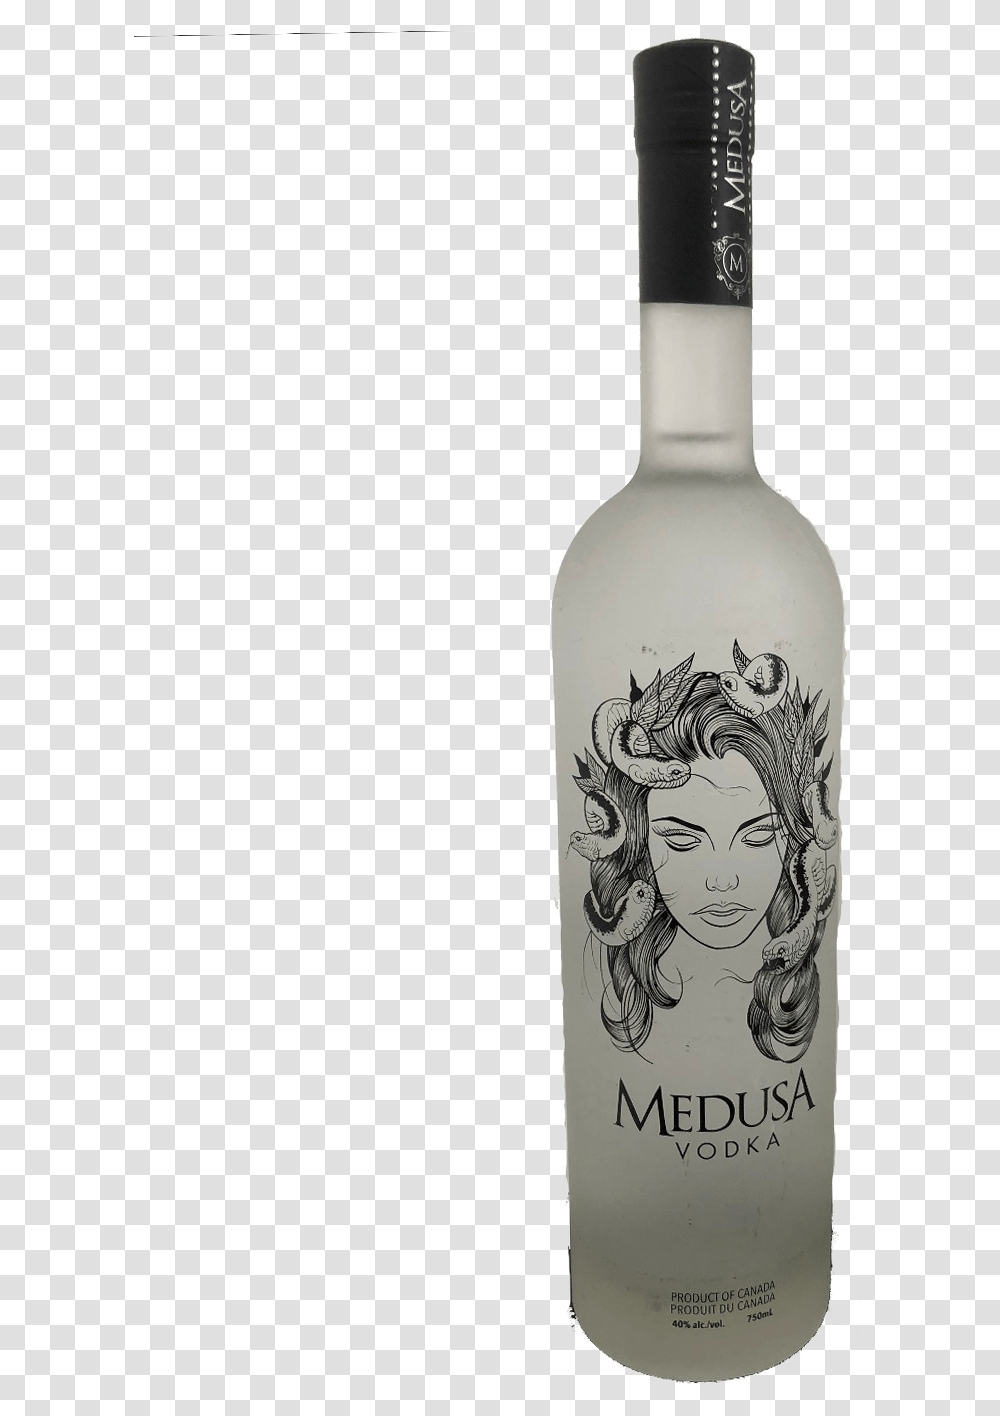 Medusa Vodka Download Medusa Vodka, Liquor, Alcohol, Beverage, Drink Transparent Png